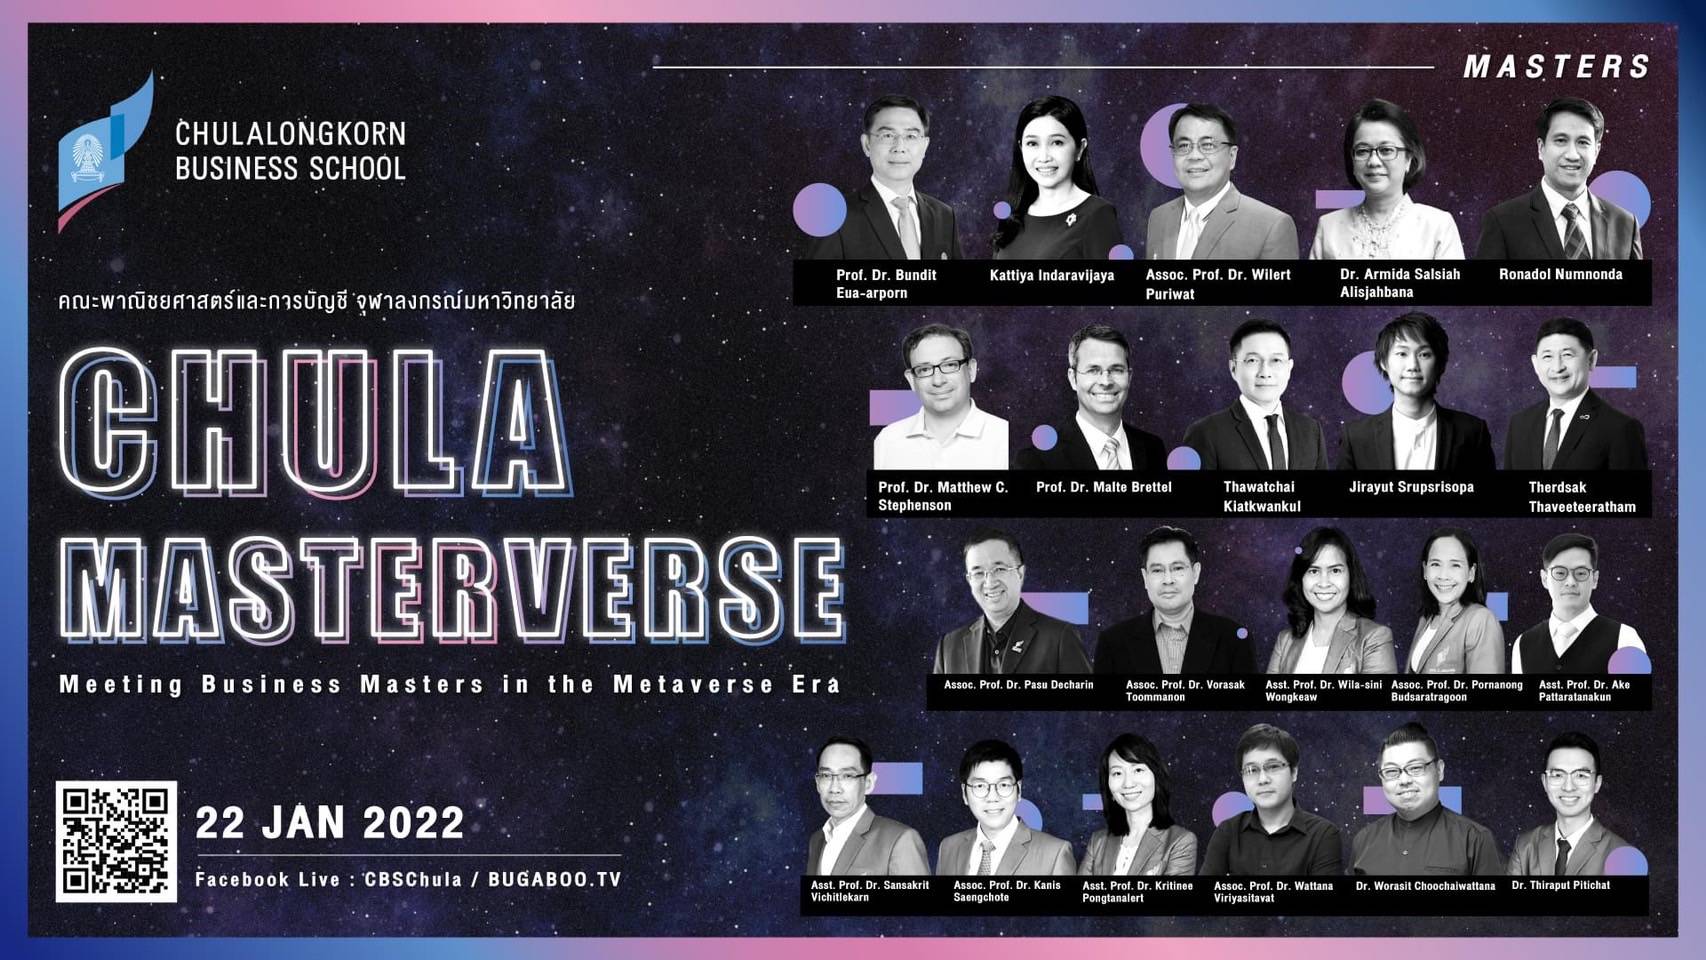 คณะบัญชี จุฬาฯ จัดเสวนาธุรกิจ Chula Masterverse 2022 รวมขุนพลปรมาจารย์ระดับมาสเตอร์หลากแขนงทั้งไทยและเทศ แนะแนวคิดและกลยุทธ์ สู่โลกธุรกิจยุค metaverse